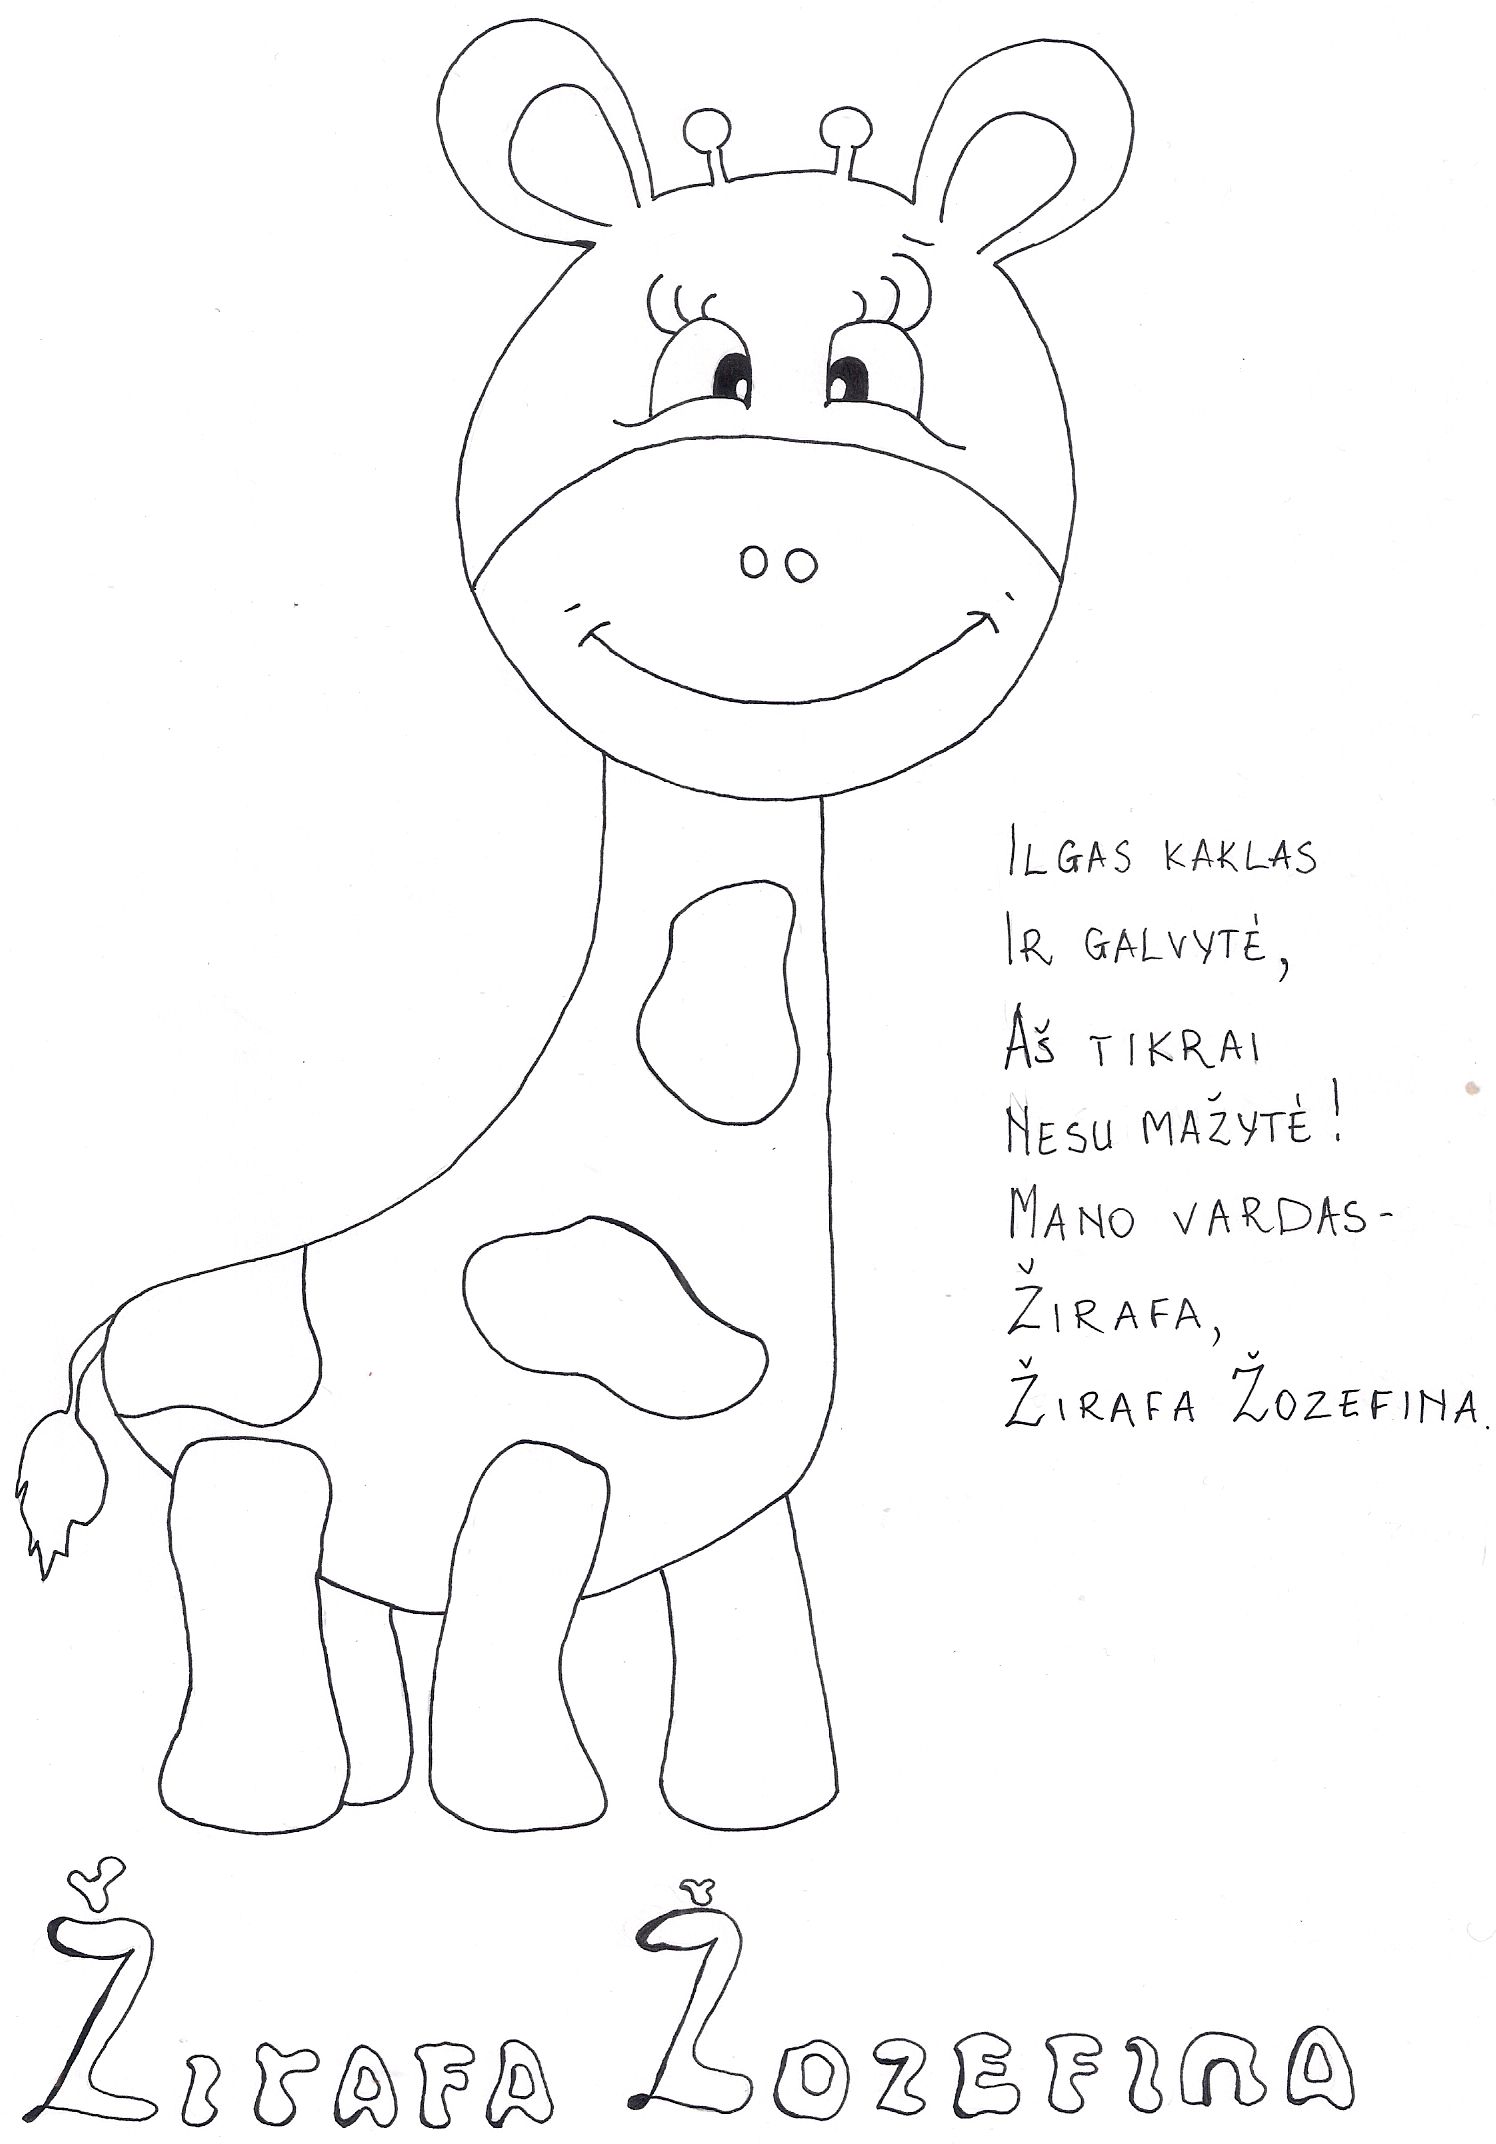 Piešinuką nuspalvok ir eilėraštį išmok: Žirafa Žozefina